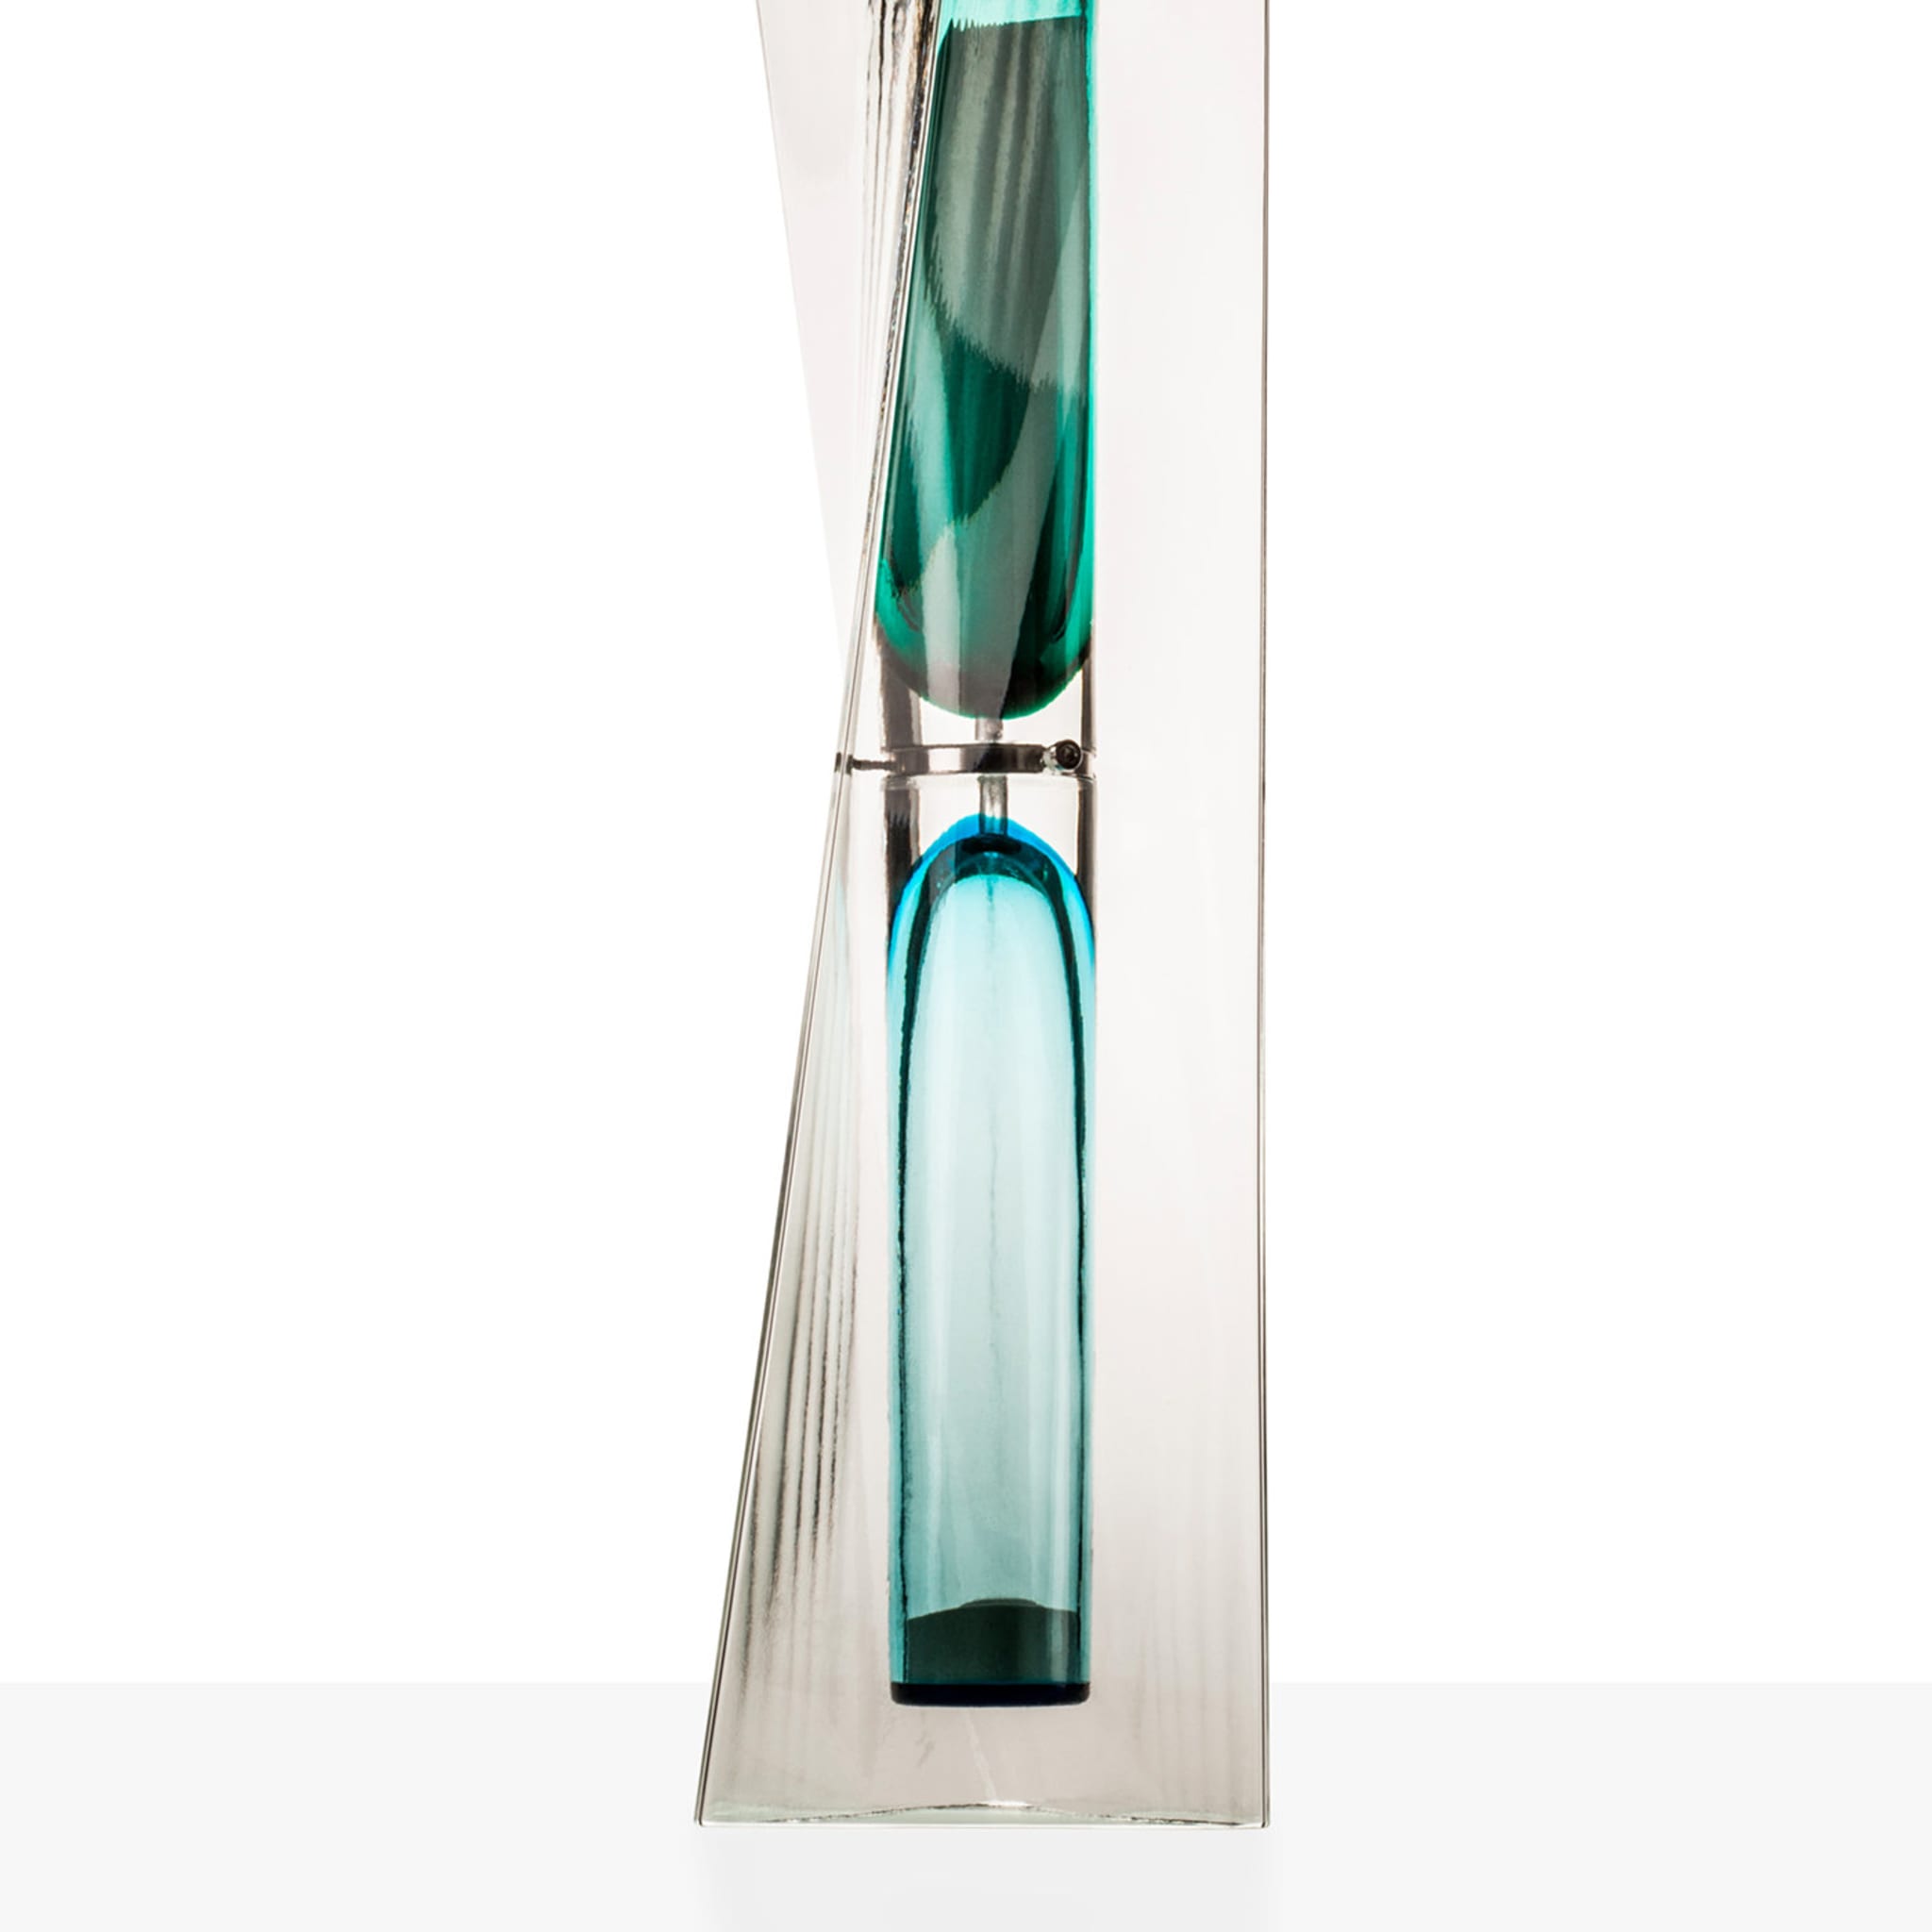 Ando Time Green/Aqua Hourglass by Tadao Ando - Alternative view 1